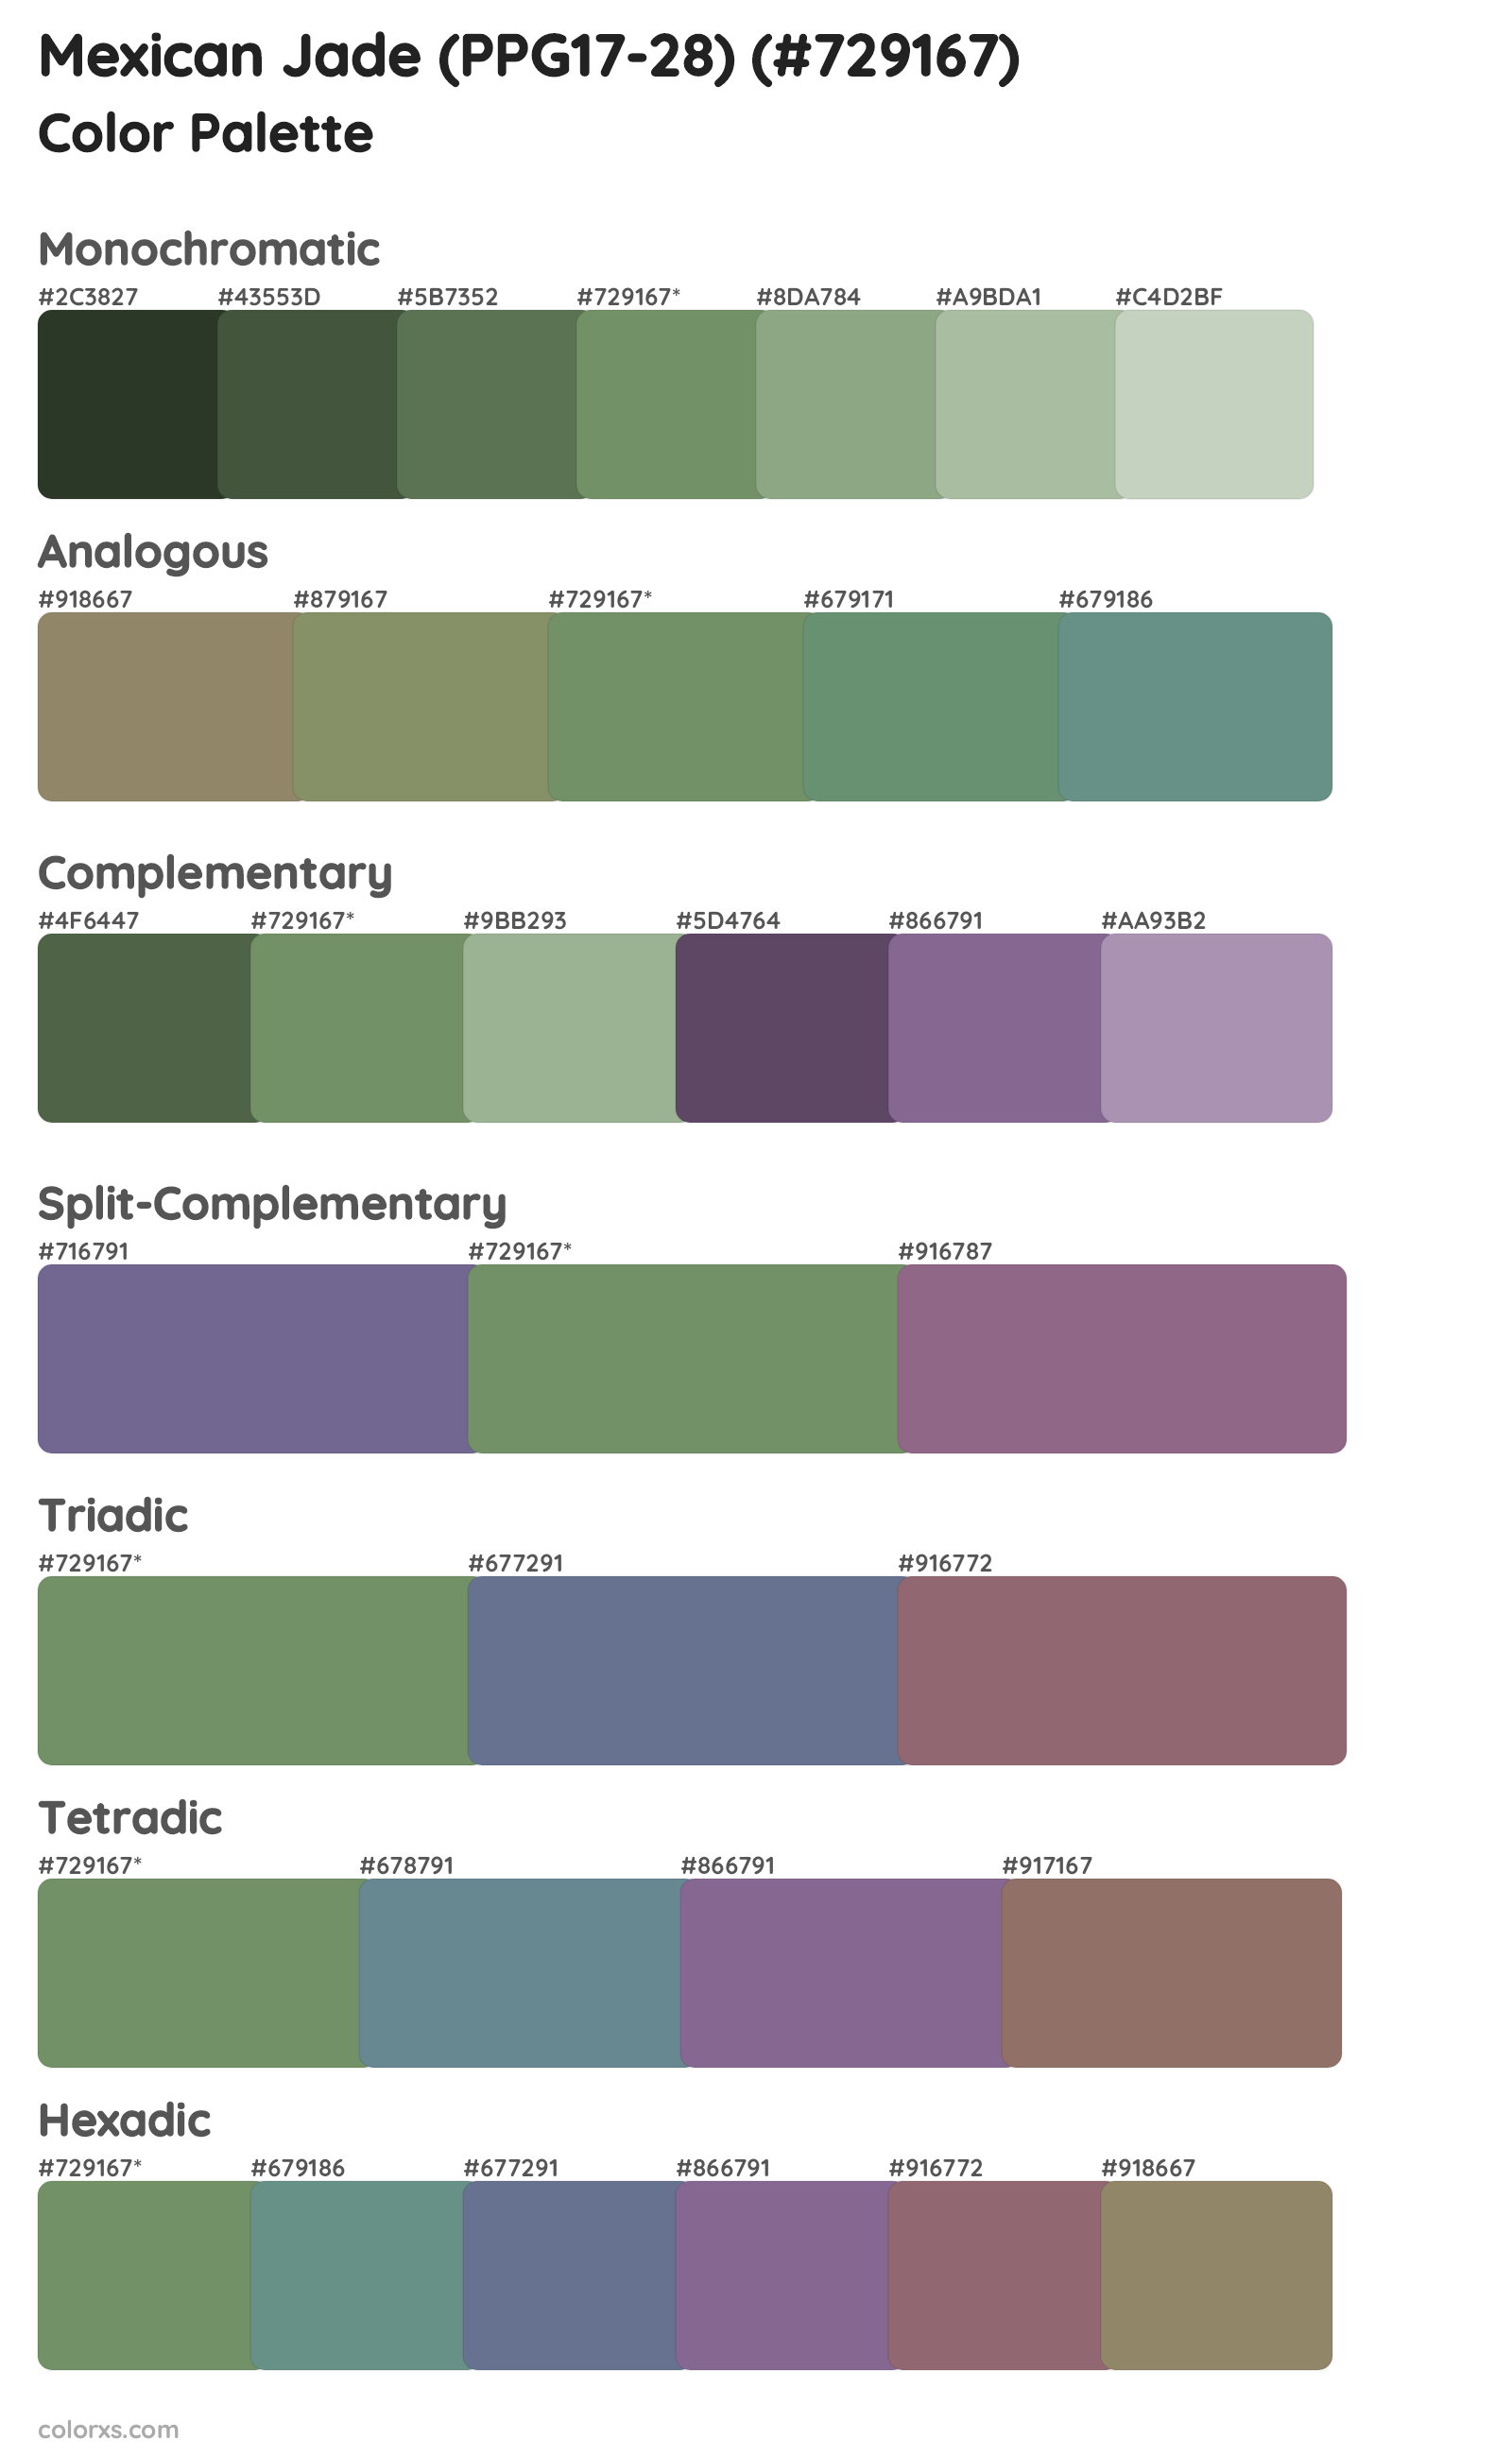 Mexican Jade (PPG17-28) Color Scheme Palettes